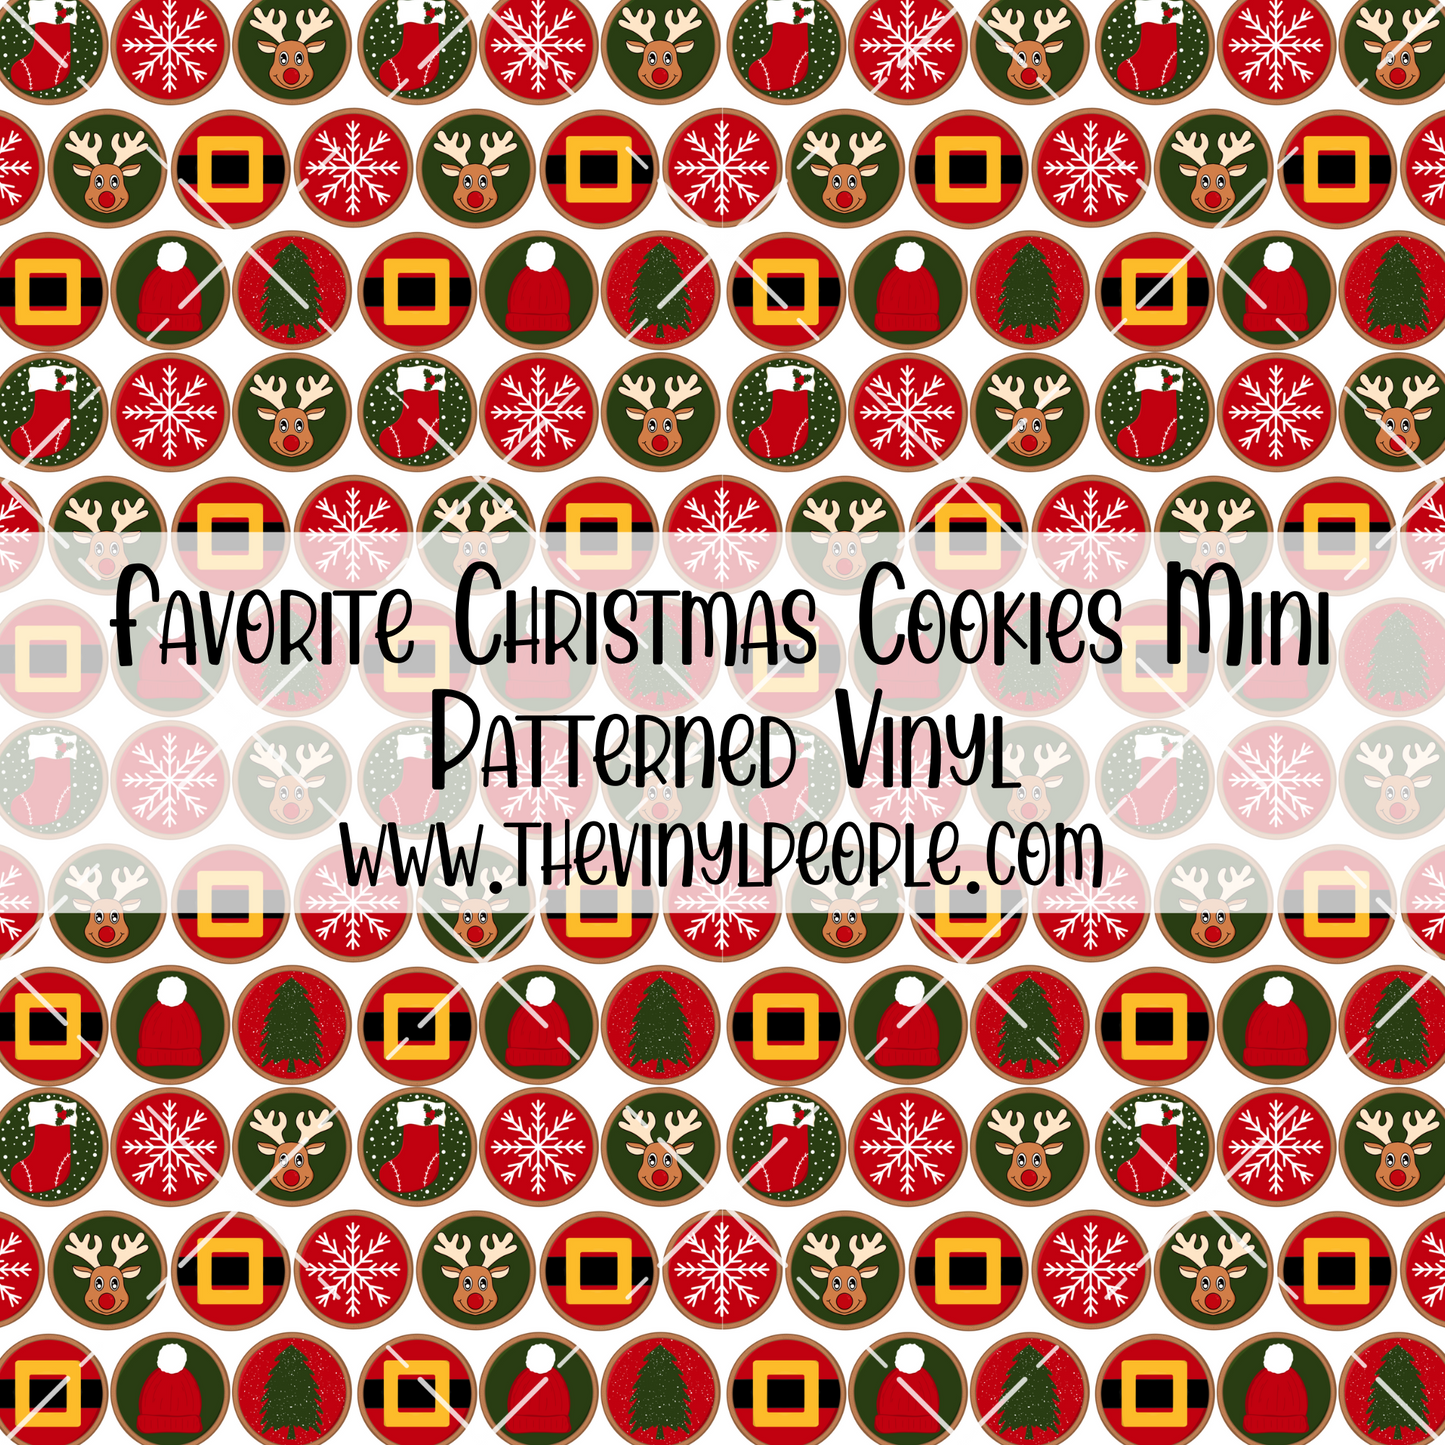 Favorite Christmas Cookies Patterned Vinyl